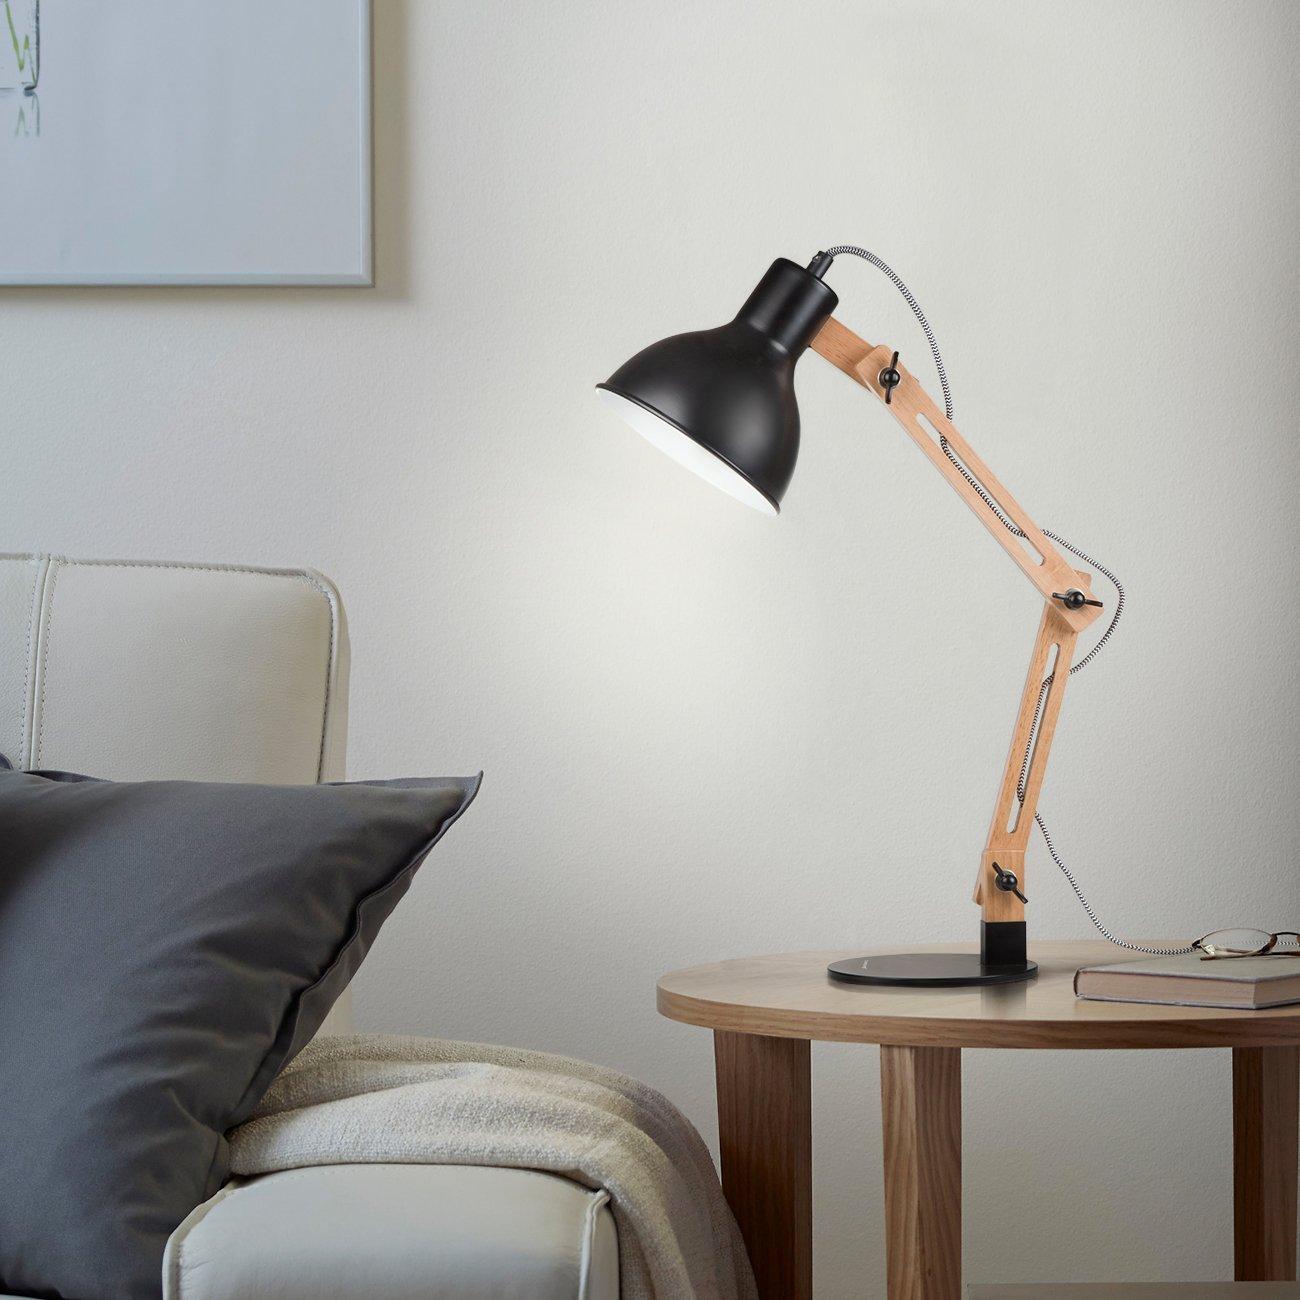 Tischlampe für das Wohnzimmer #tischlampe ©F&M TECHNOLOGY GmbH